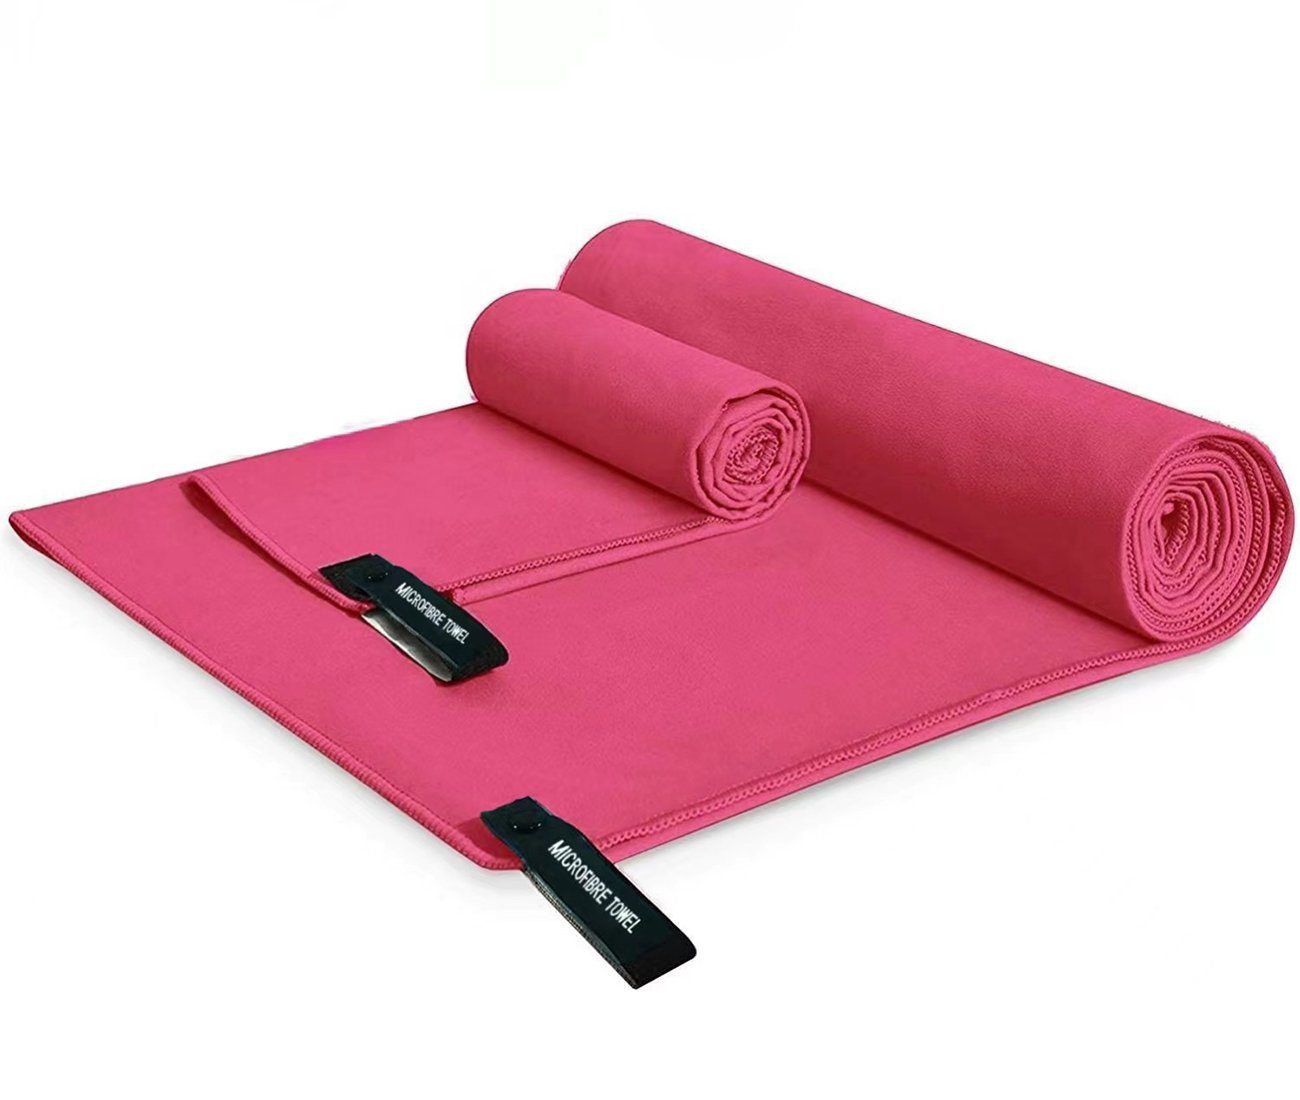 Haiaveng Handtuch Set Handtuch Set,Badetuch Groß(152x76cm)+Handtüch Klein(80x40cm), Verfügbar als Sporthandtuch Reisehandtuch Outdoor Handtuch Strandtuch pink